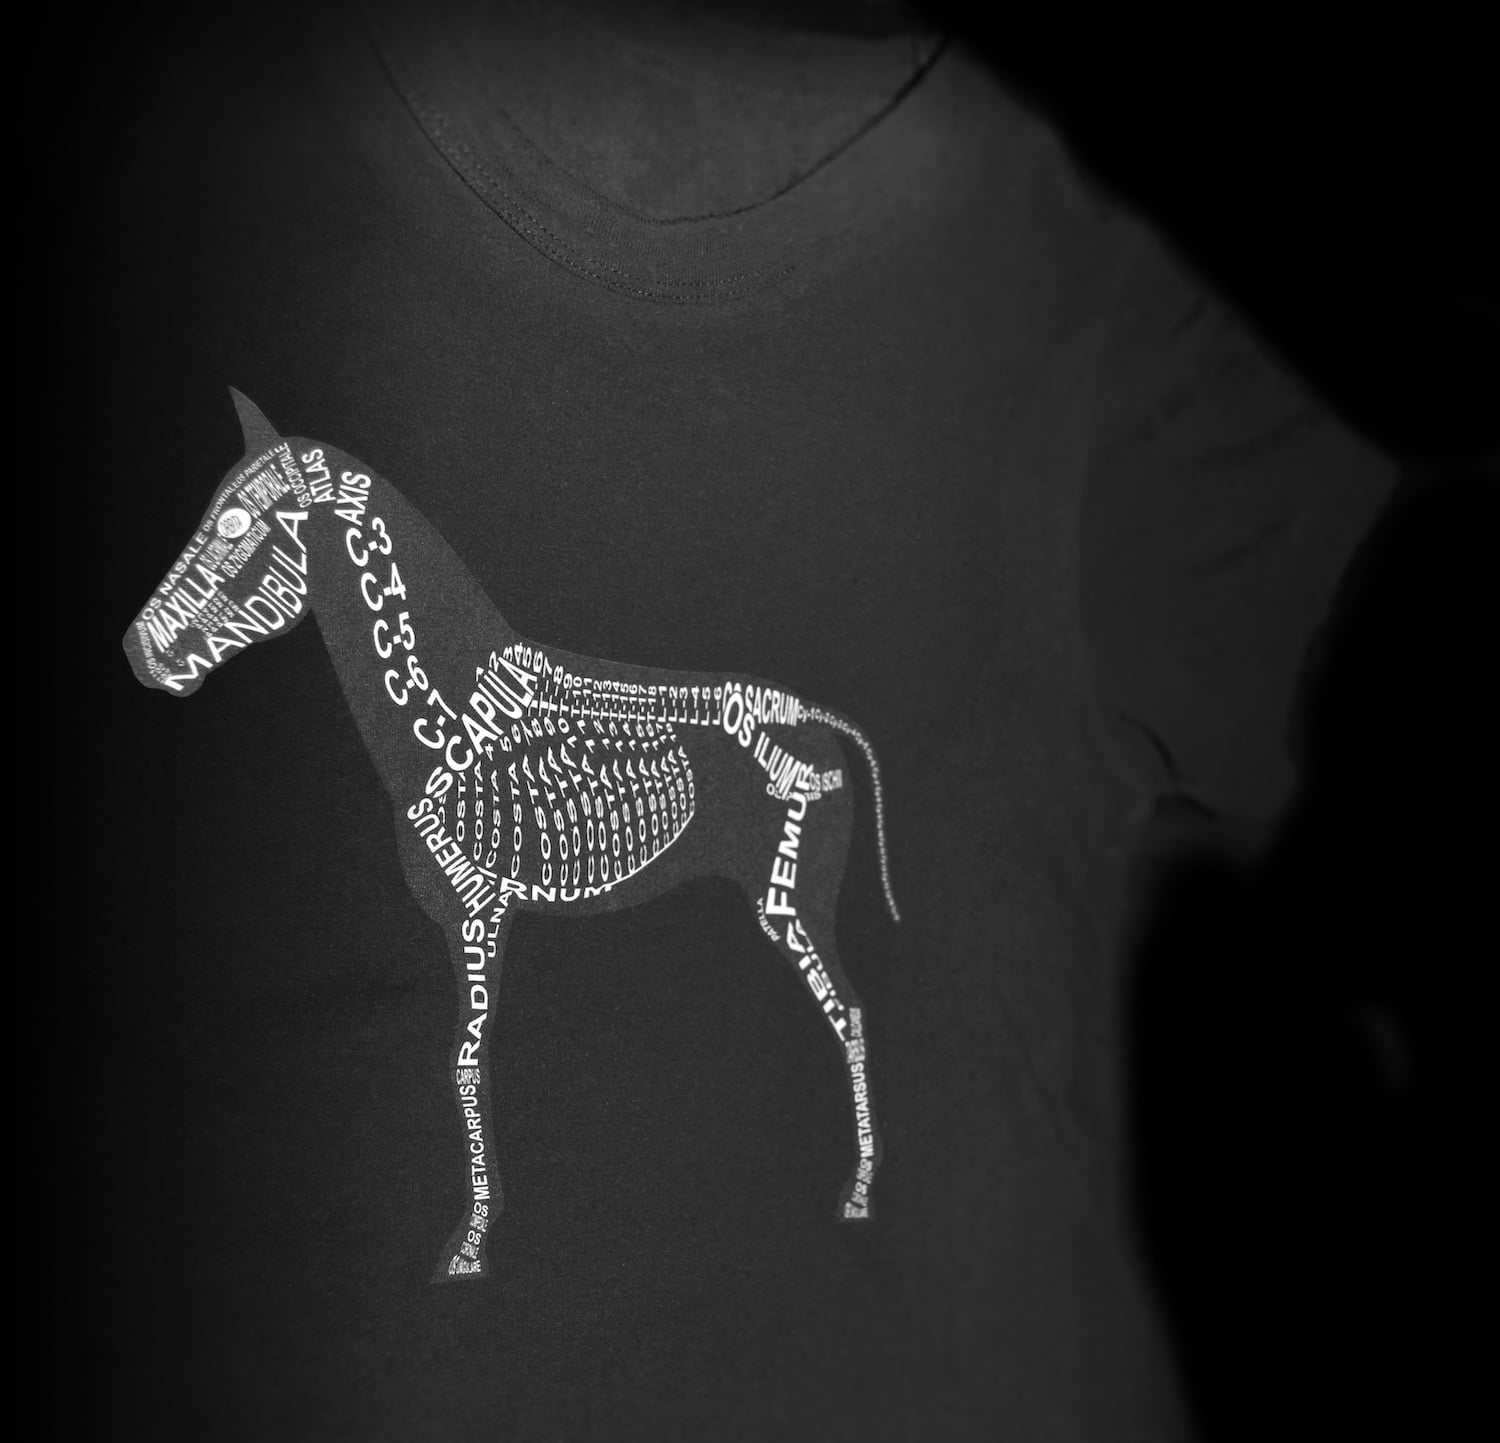 Schwarzes T-Shirt mit anatomischen Motiv vom Pferd mit Skelett für Tierärzte und Pferde-Fans